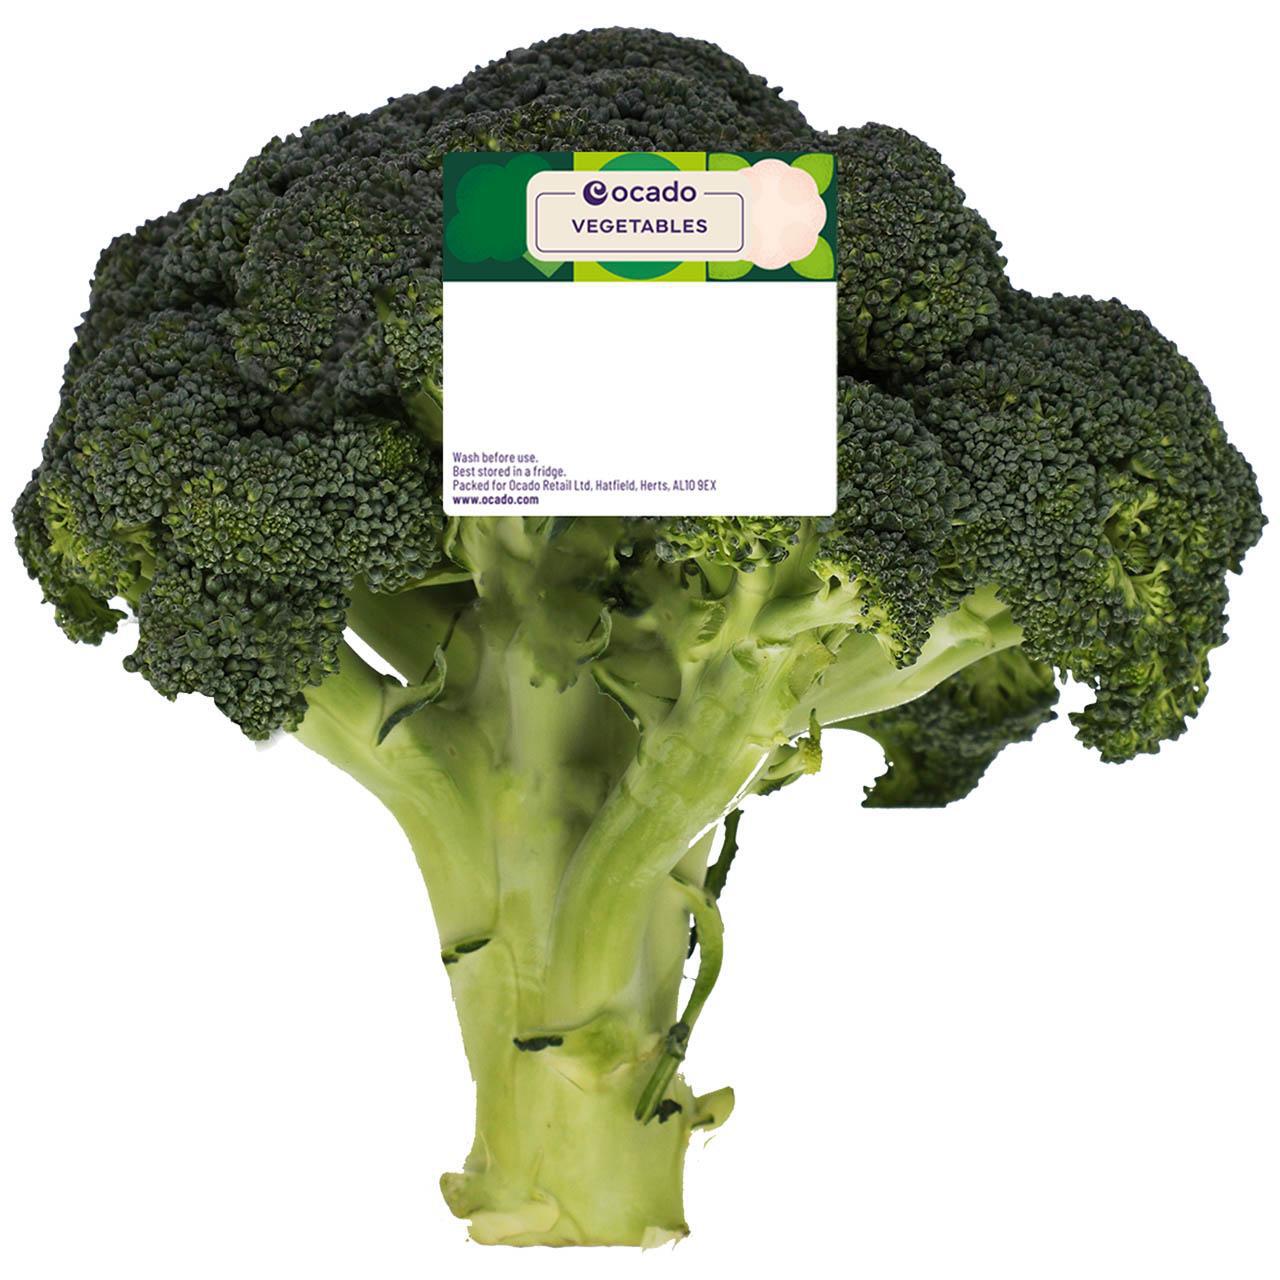 Ocado Broccoli